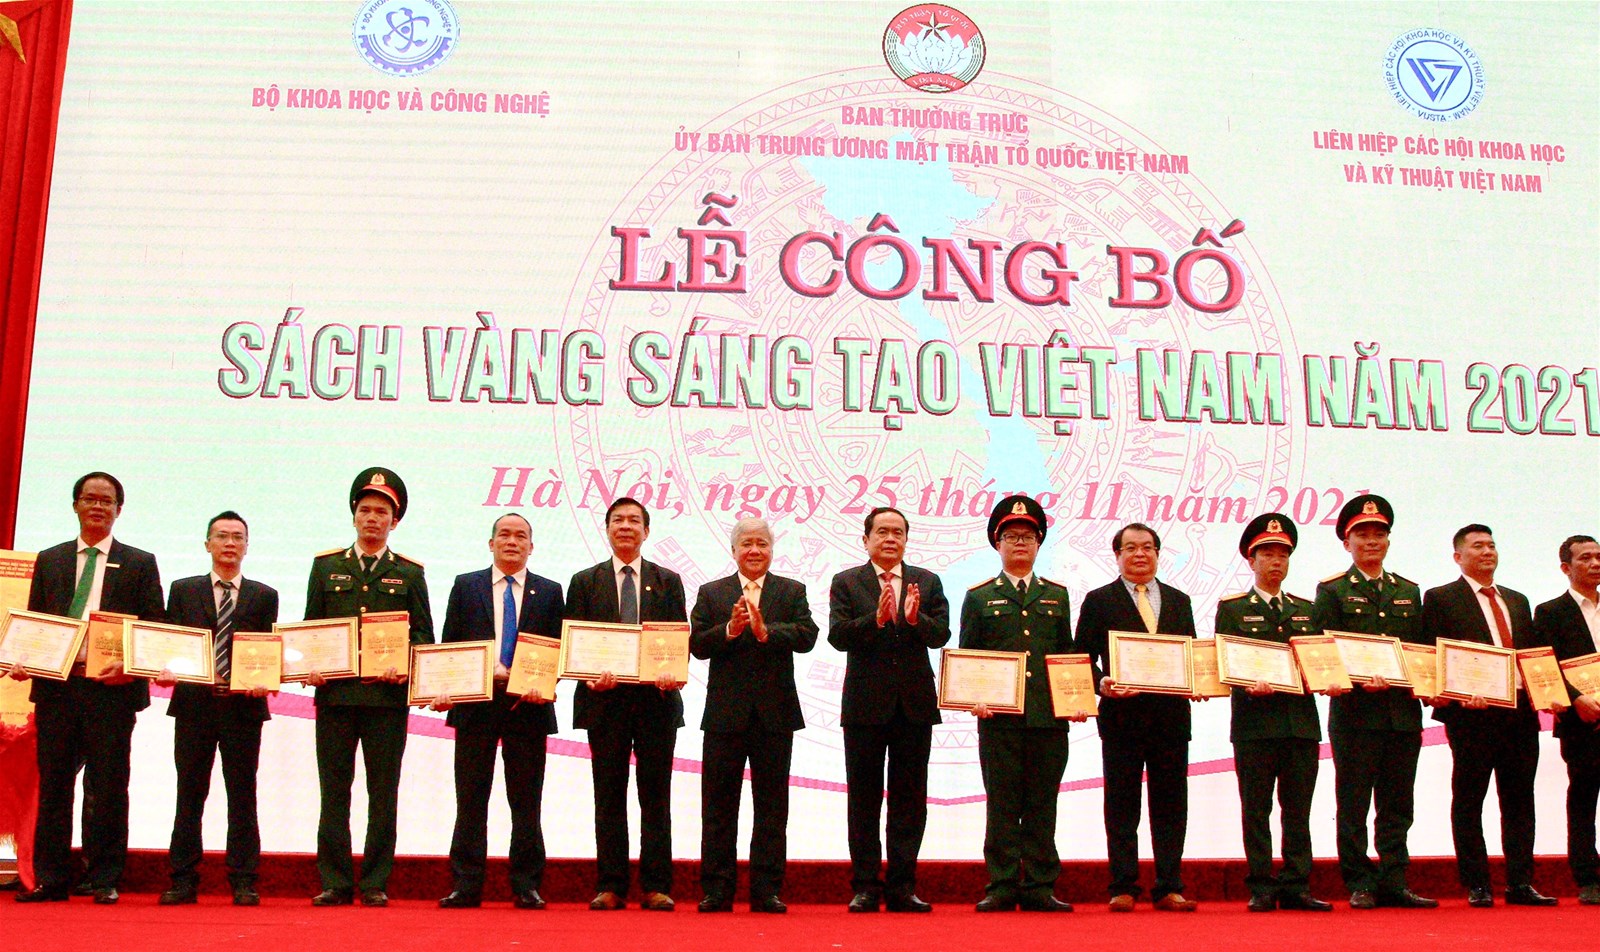 Gốm Đất Việt - đơn vị duy nhất được vinh  danh 03 công trình tiêu biểu trong sách vàng sáng tạo Việt Nam 2021